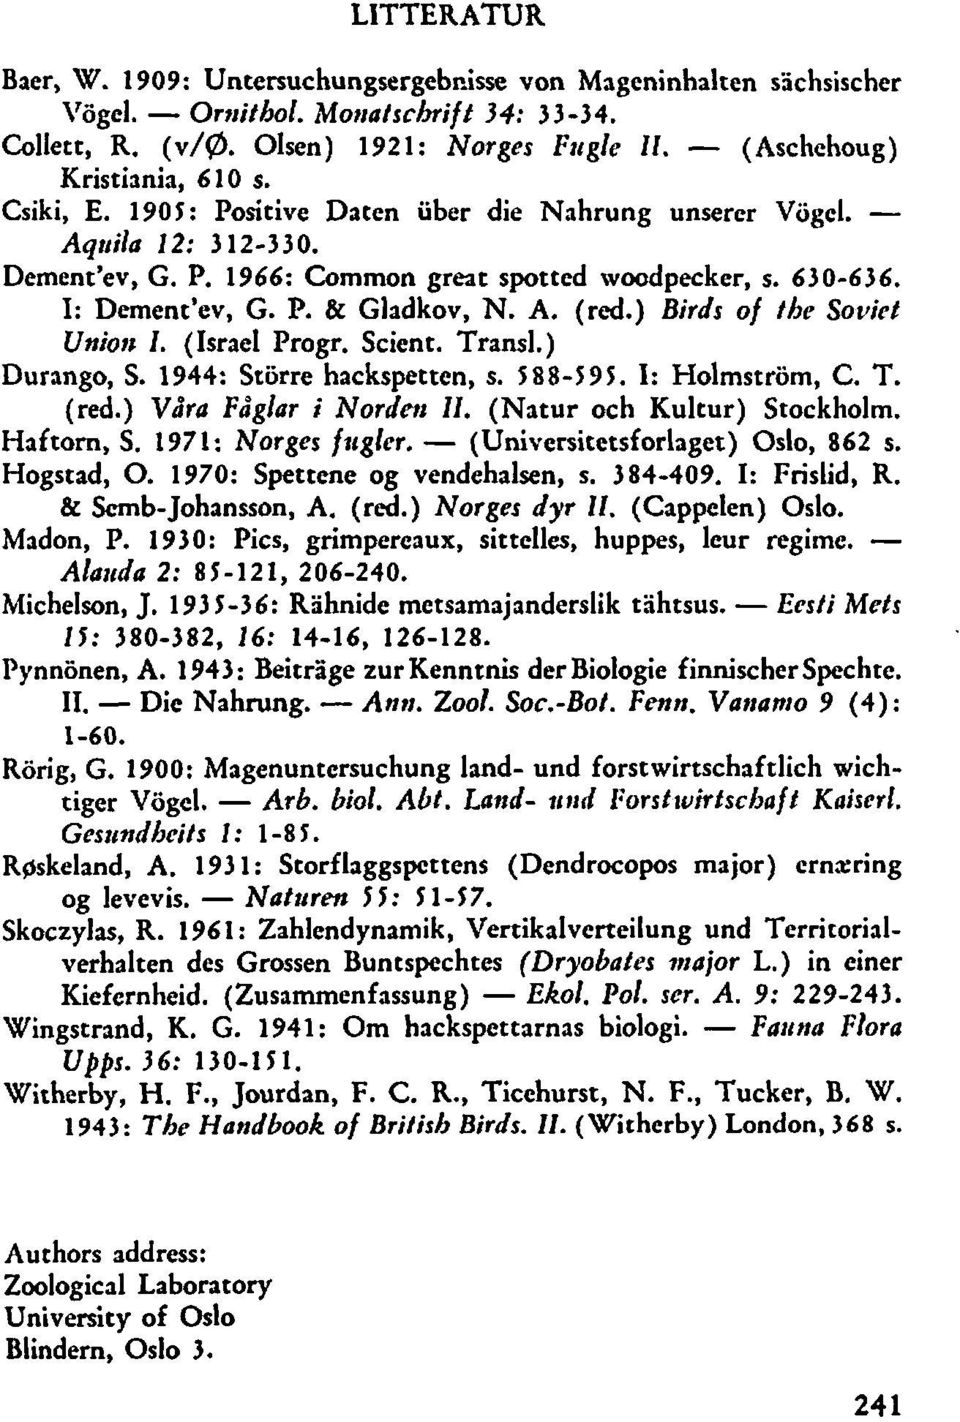 ) Birds of the Sovict Uniotz I. (Israel Progr. Scient. Transl.) Durango, S. 944: Storre hackspetten, s. 889. I: Holmstrom, C. T. (red.) Våra Fåglar i Nordtvi Il. (Natur och Kultur) Stockholm.